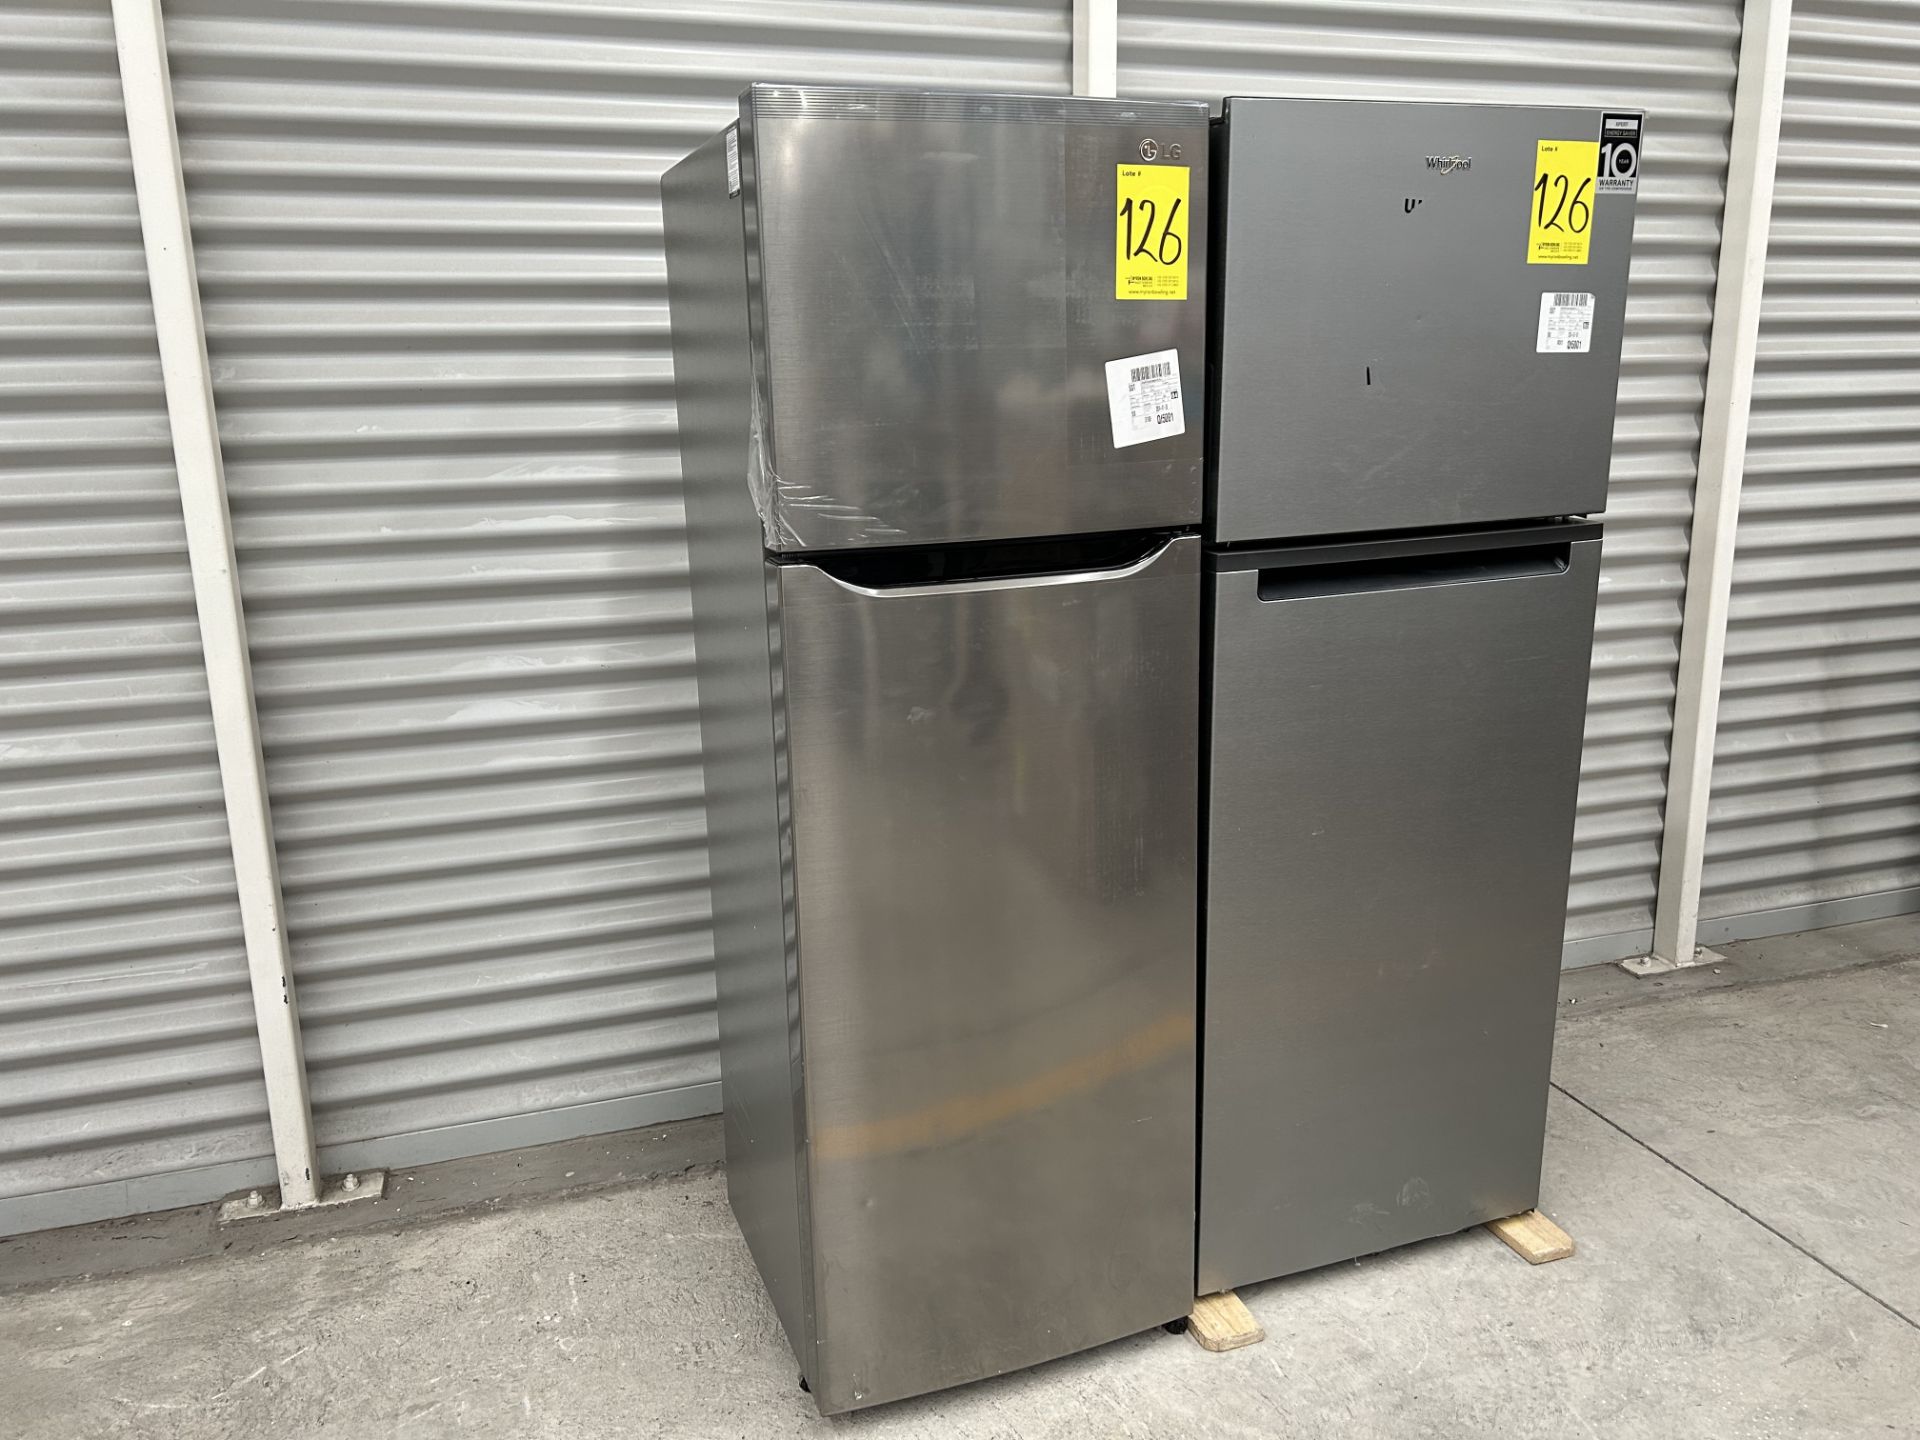 Lote de 2 refrigeradores contiene: 1 Refrigerador Marca LG, Modelo GT29BPPK, Serie 41191, Color GRI - Image 2 of 10